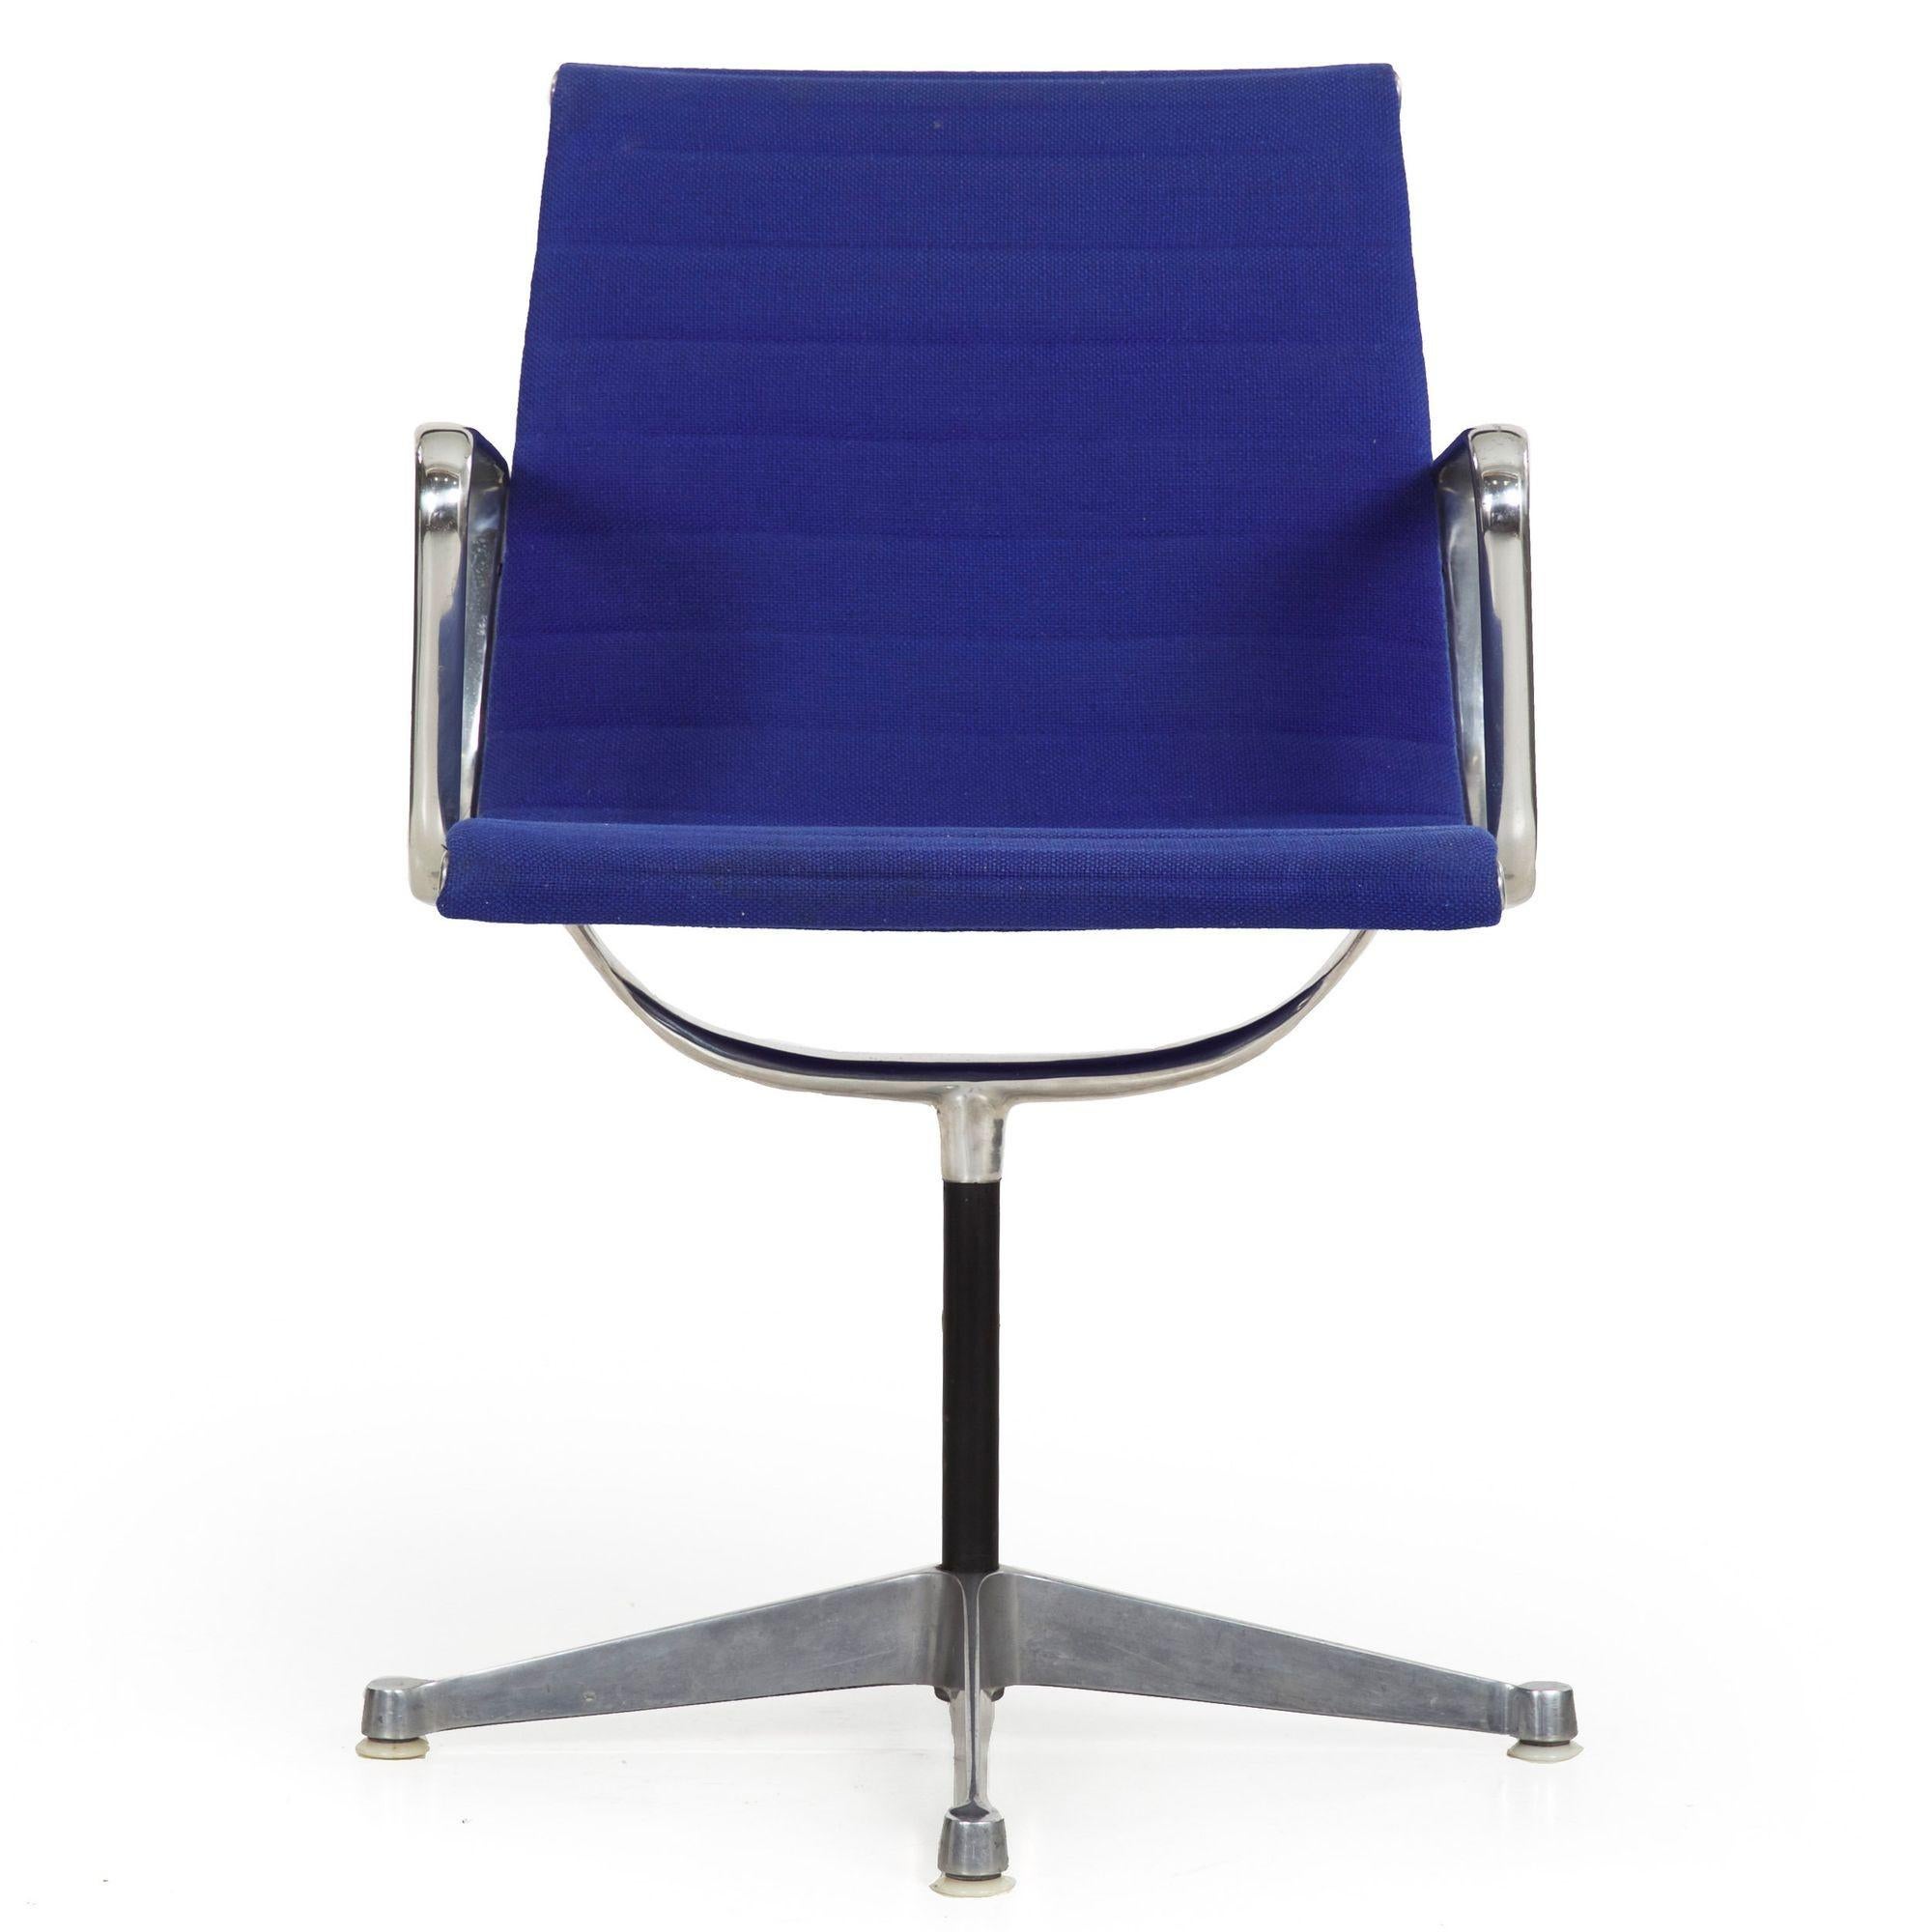 Chaise de bureau pivotante bleue vintage Charles & Ray Eames pour Herman Miller
Article # 705VFW20-1

Cette chaise de bureau pivotante conçue par Charles Eames et commercialisée par Herman Miller a été conçue avec le premier pied aplati et conserve